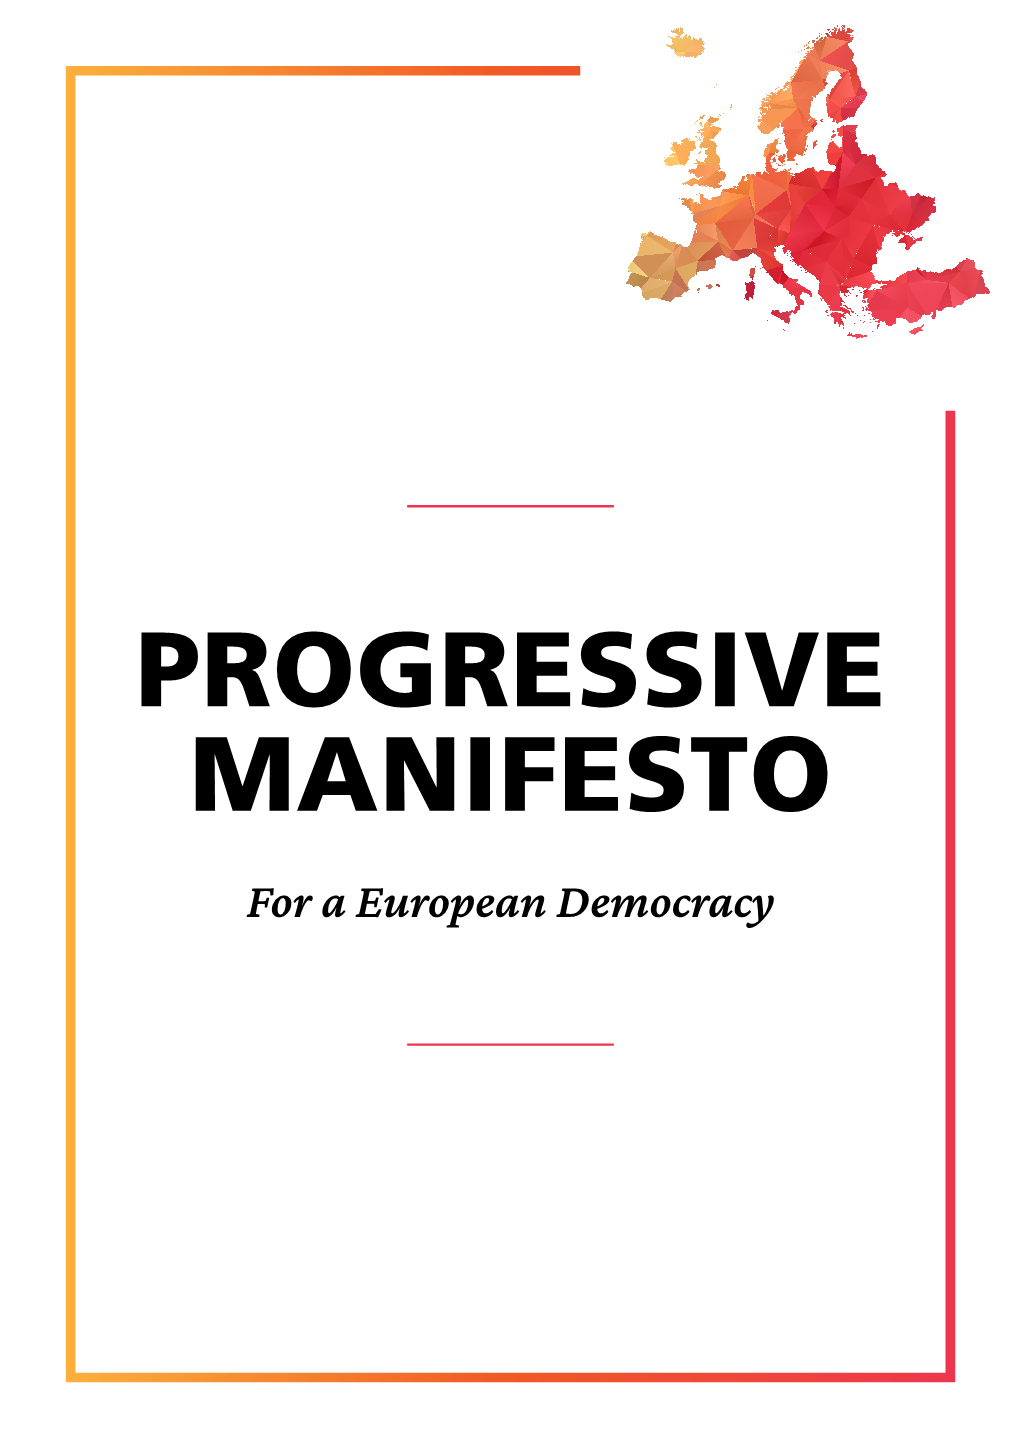 Download the Progressive Manifesto for a Europea Democracy